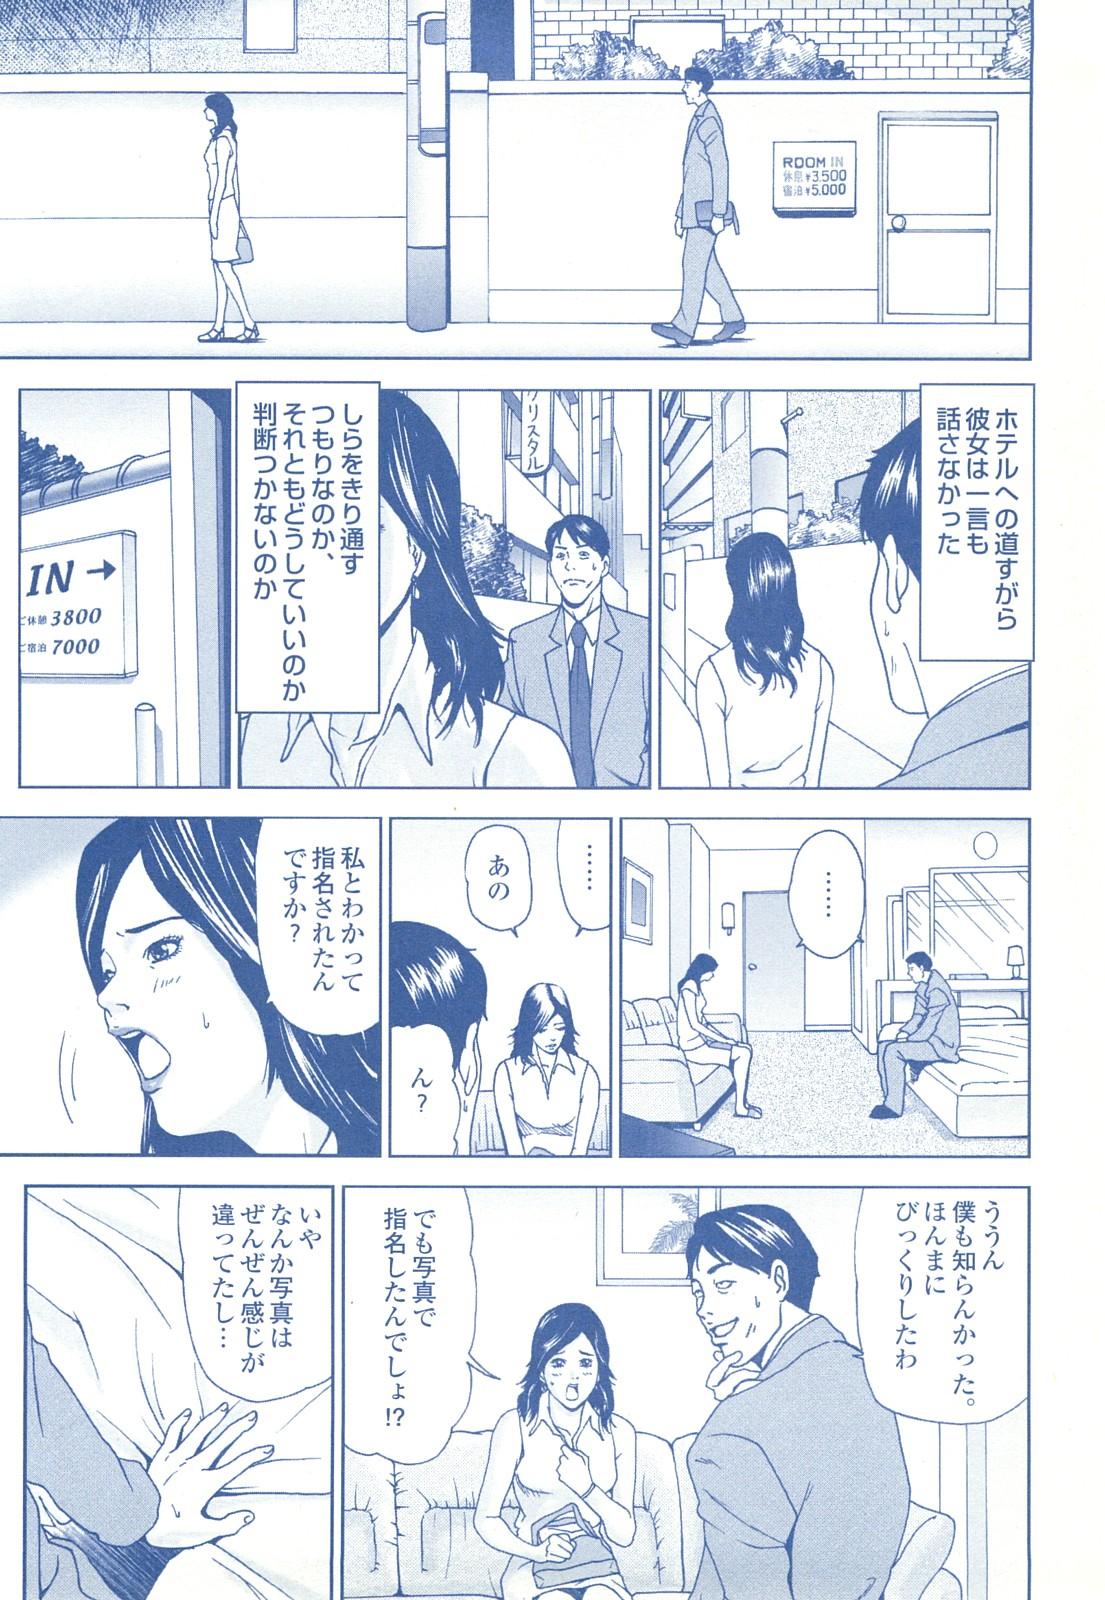 コミック裏モノJAPAN Vol.18 今井のりたつスペシャル号 203